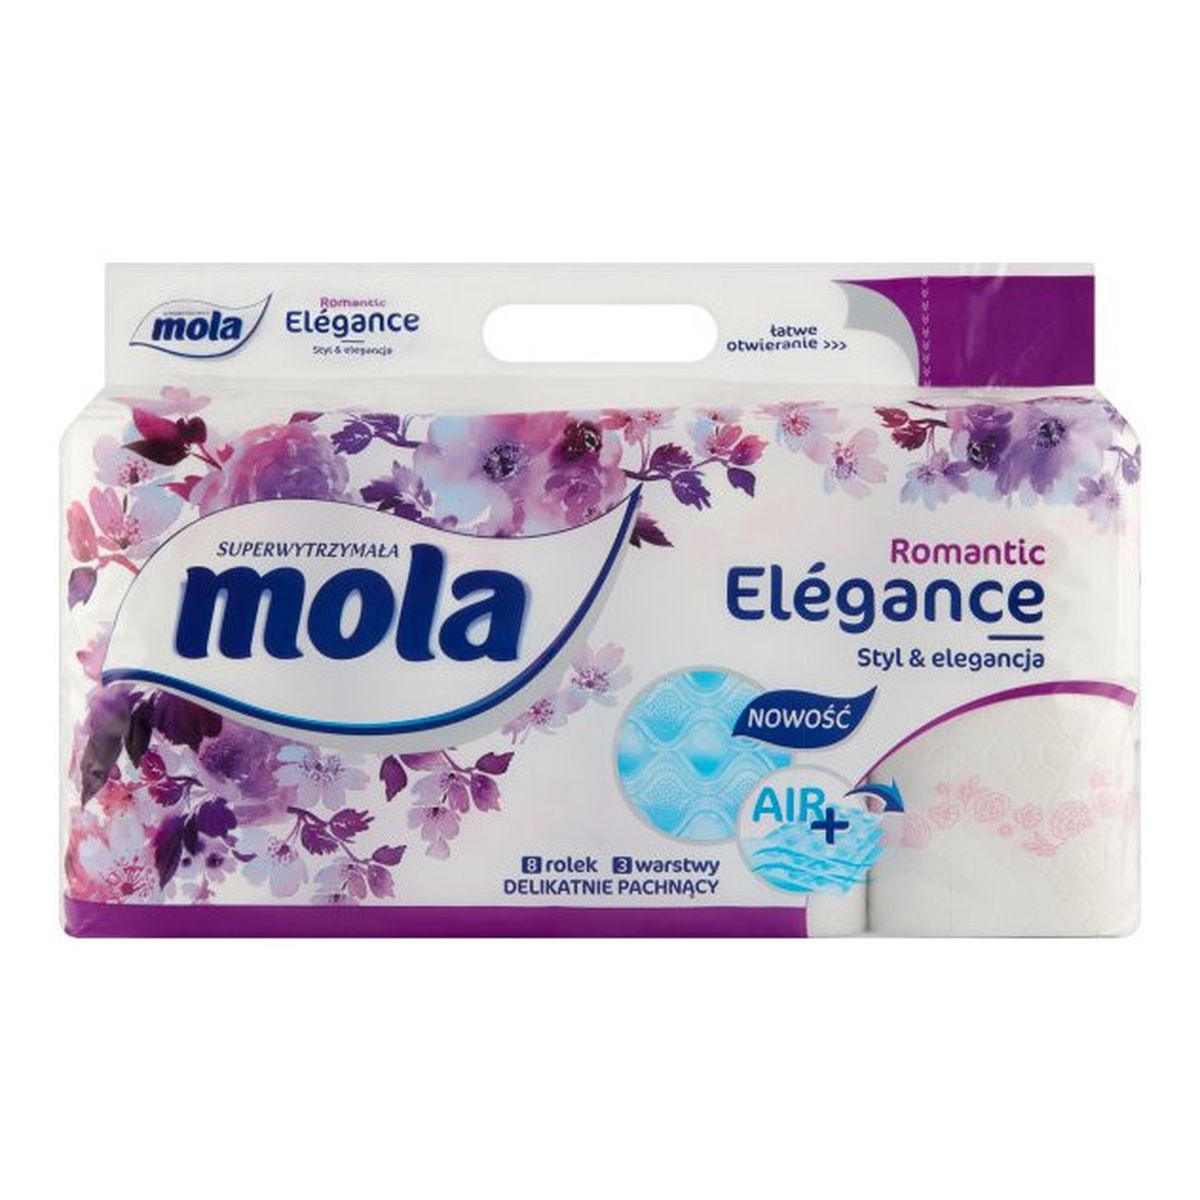 Mola Elégance Romantic Papier toaletowy 8 rolek